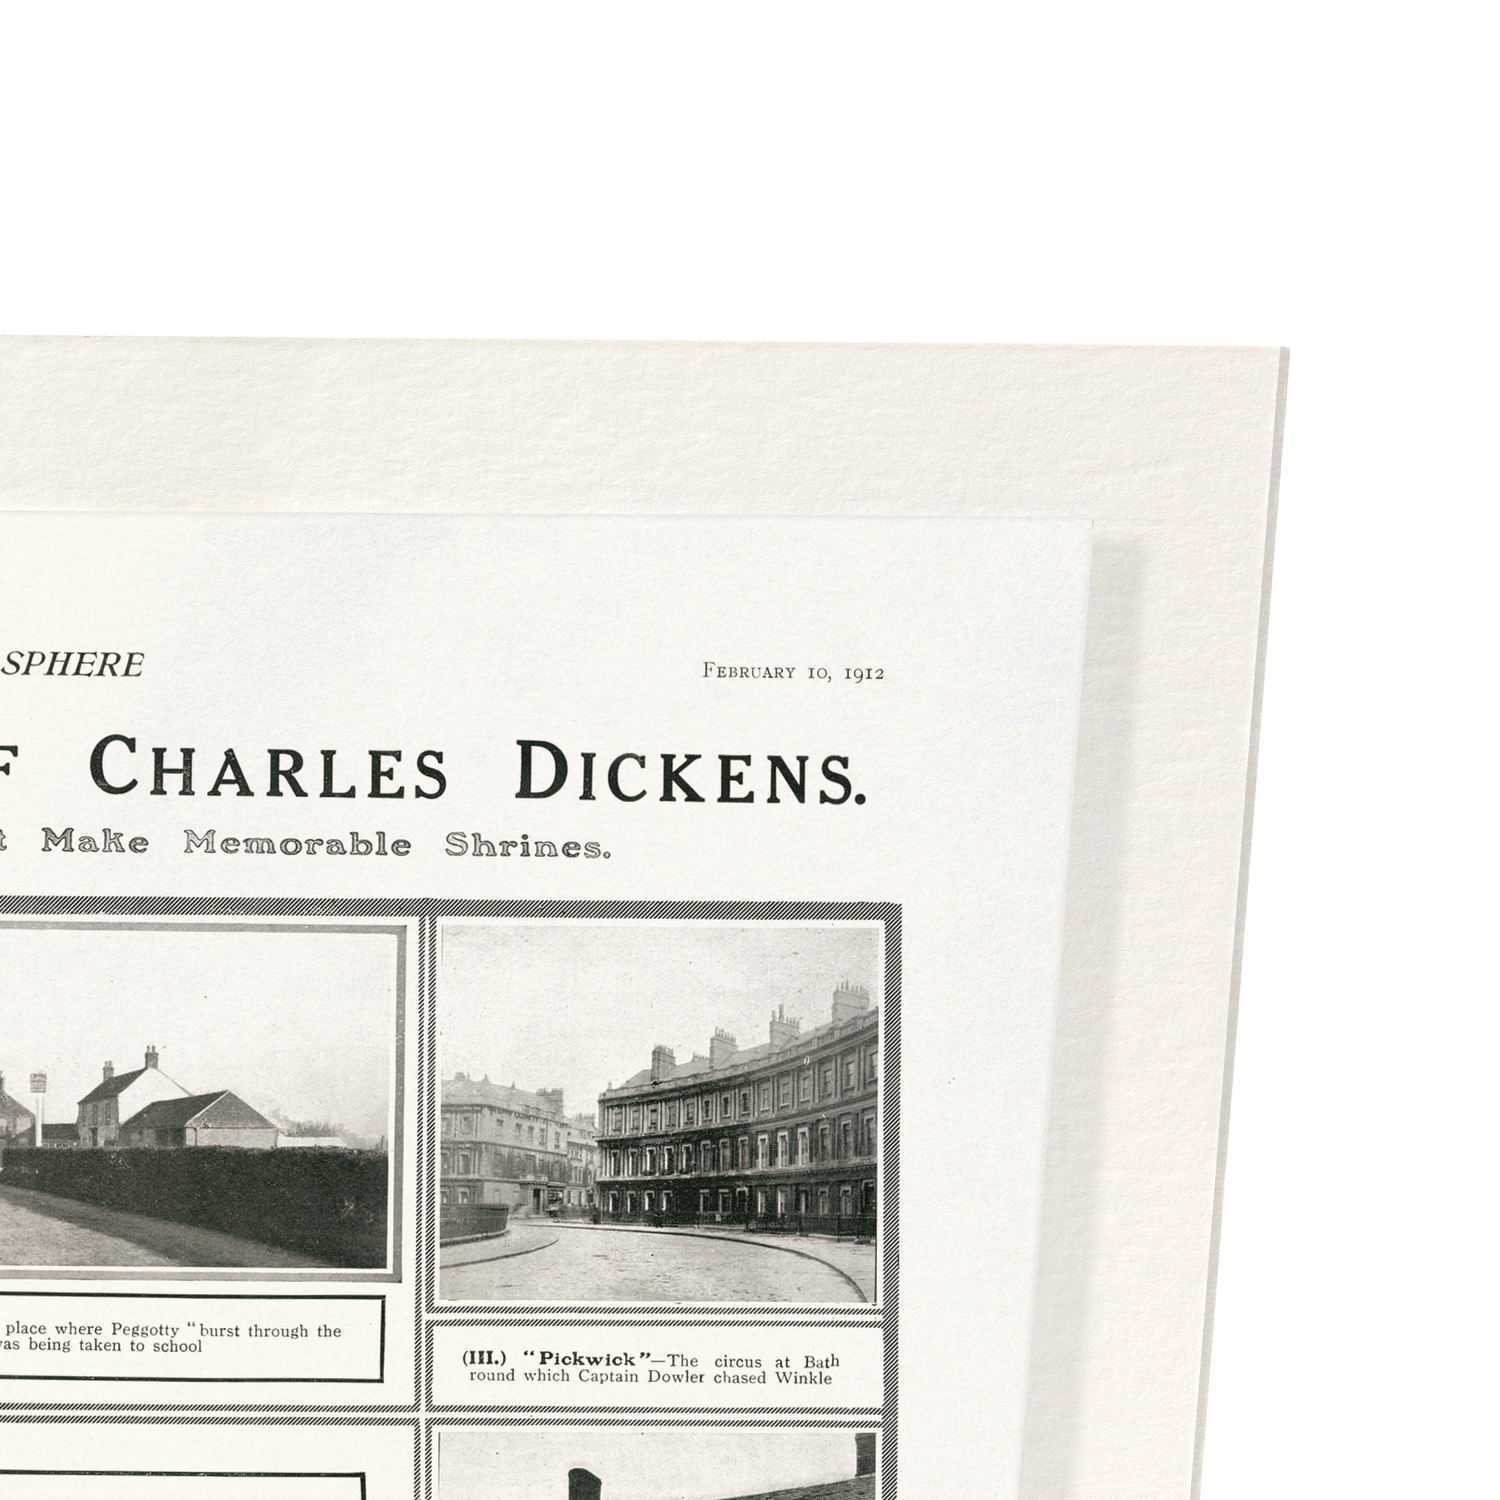 SCENES IN CHARLES DICKENS' NOVELS (1912)